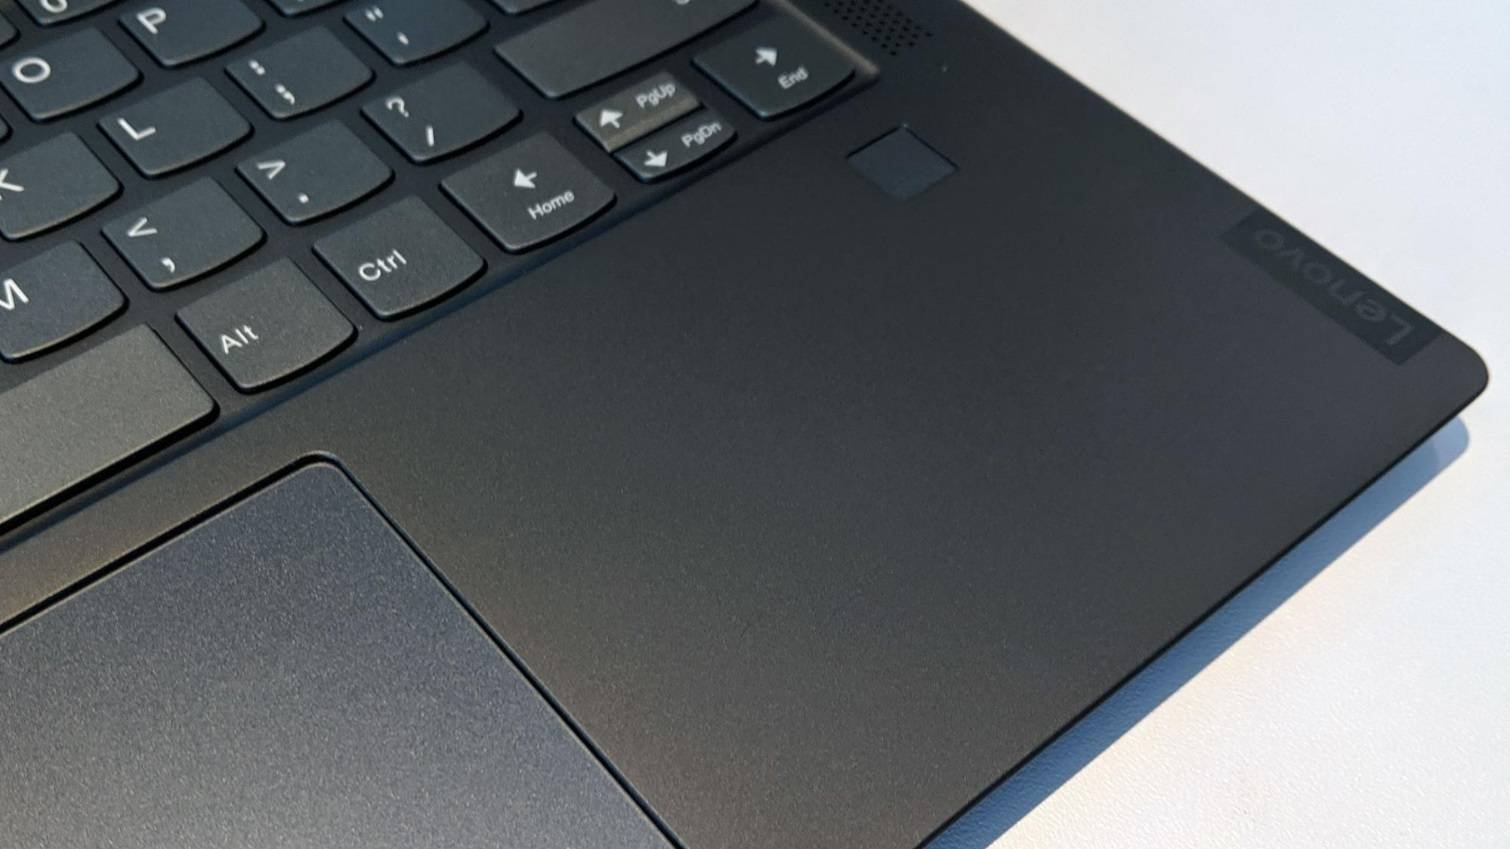 Immagine di Notebook Lenovo datati a rischio sicurezza, ma la soluzione è semplice